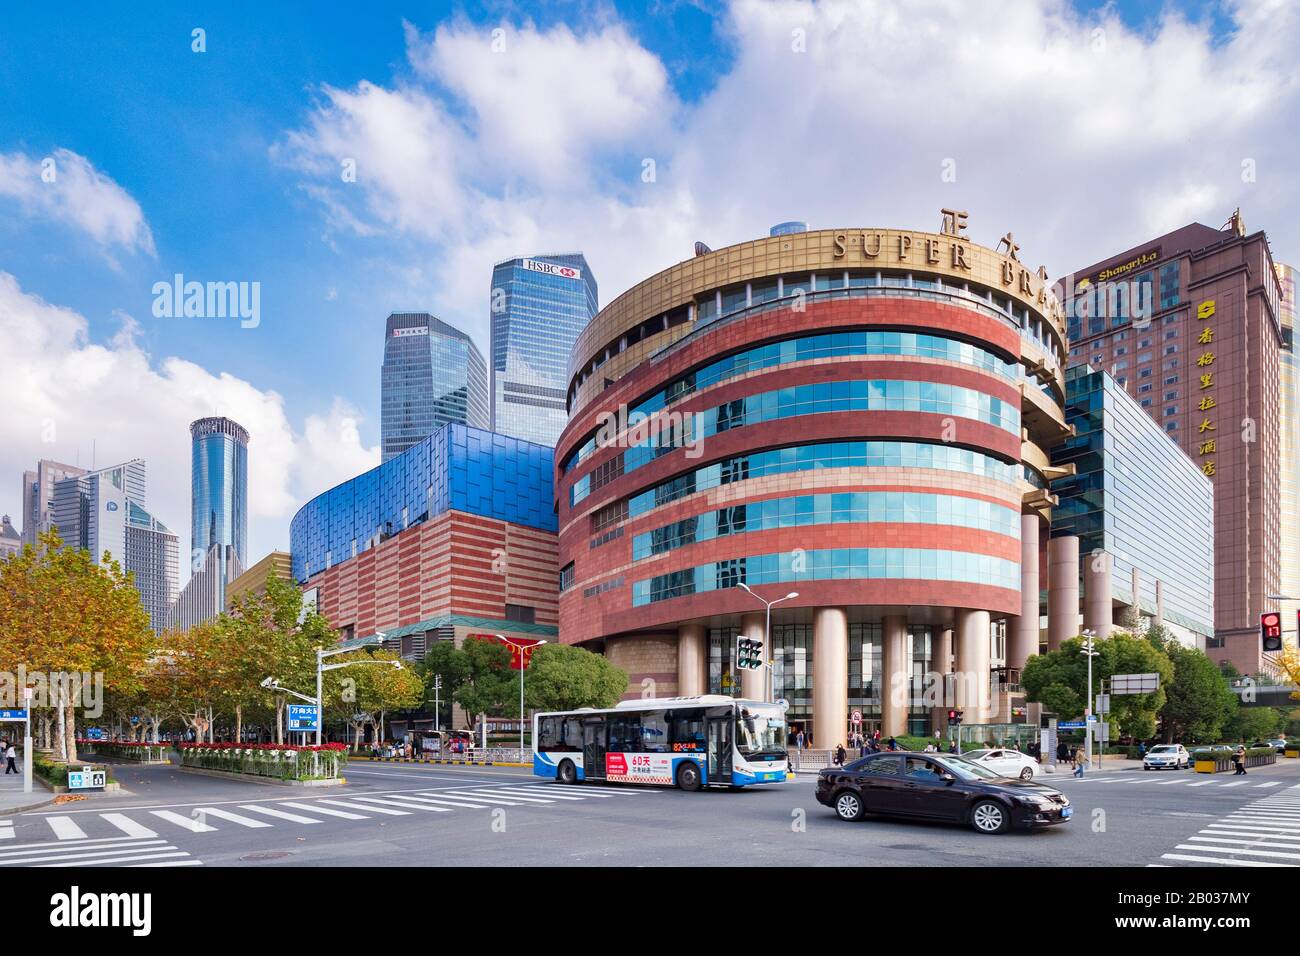 1er décembre 2018 : Shanghai, Chine - Super Brand Mall, un centre commercial de 13 étages parmi les hauts sommets modernes du quartier de Pudong. Banque D'Images